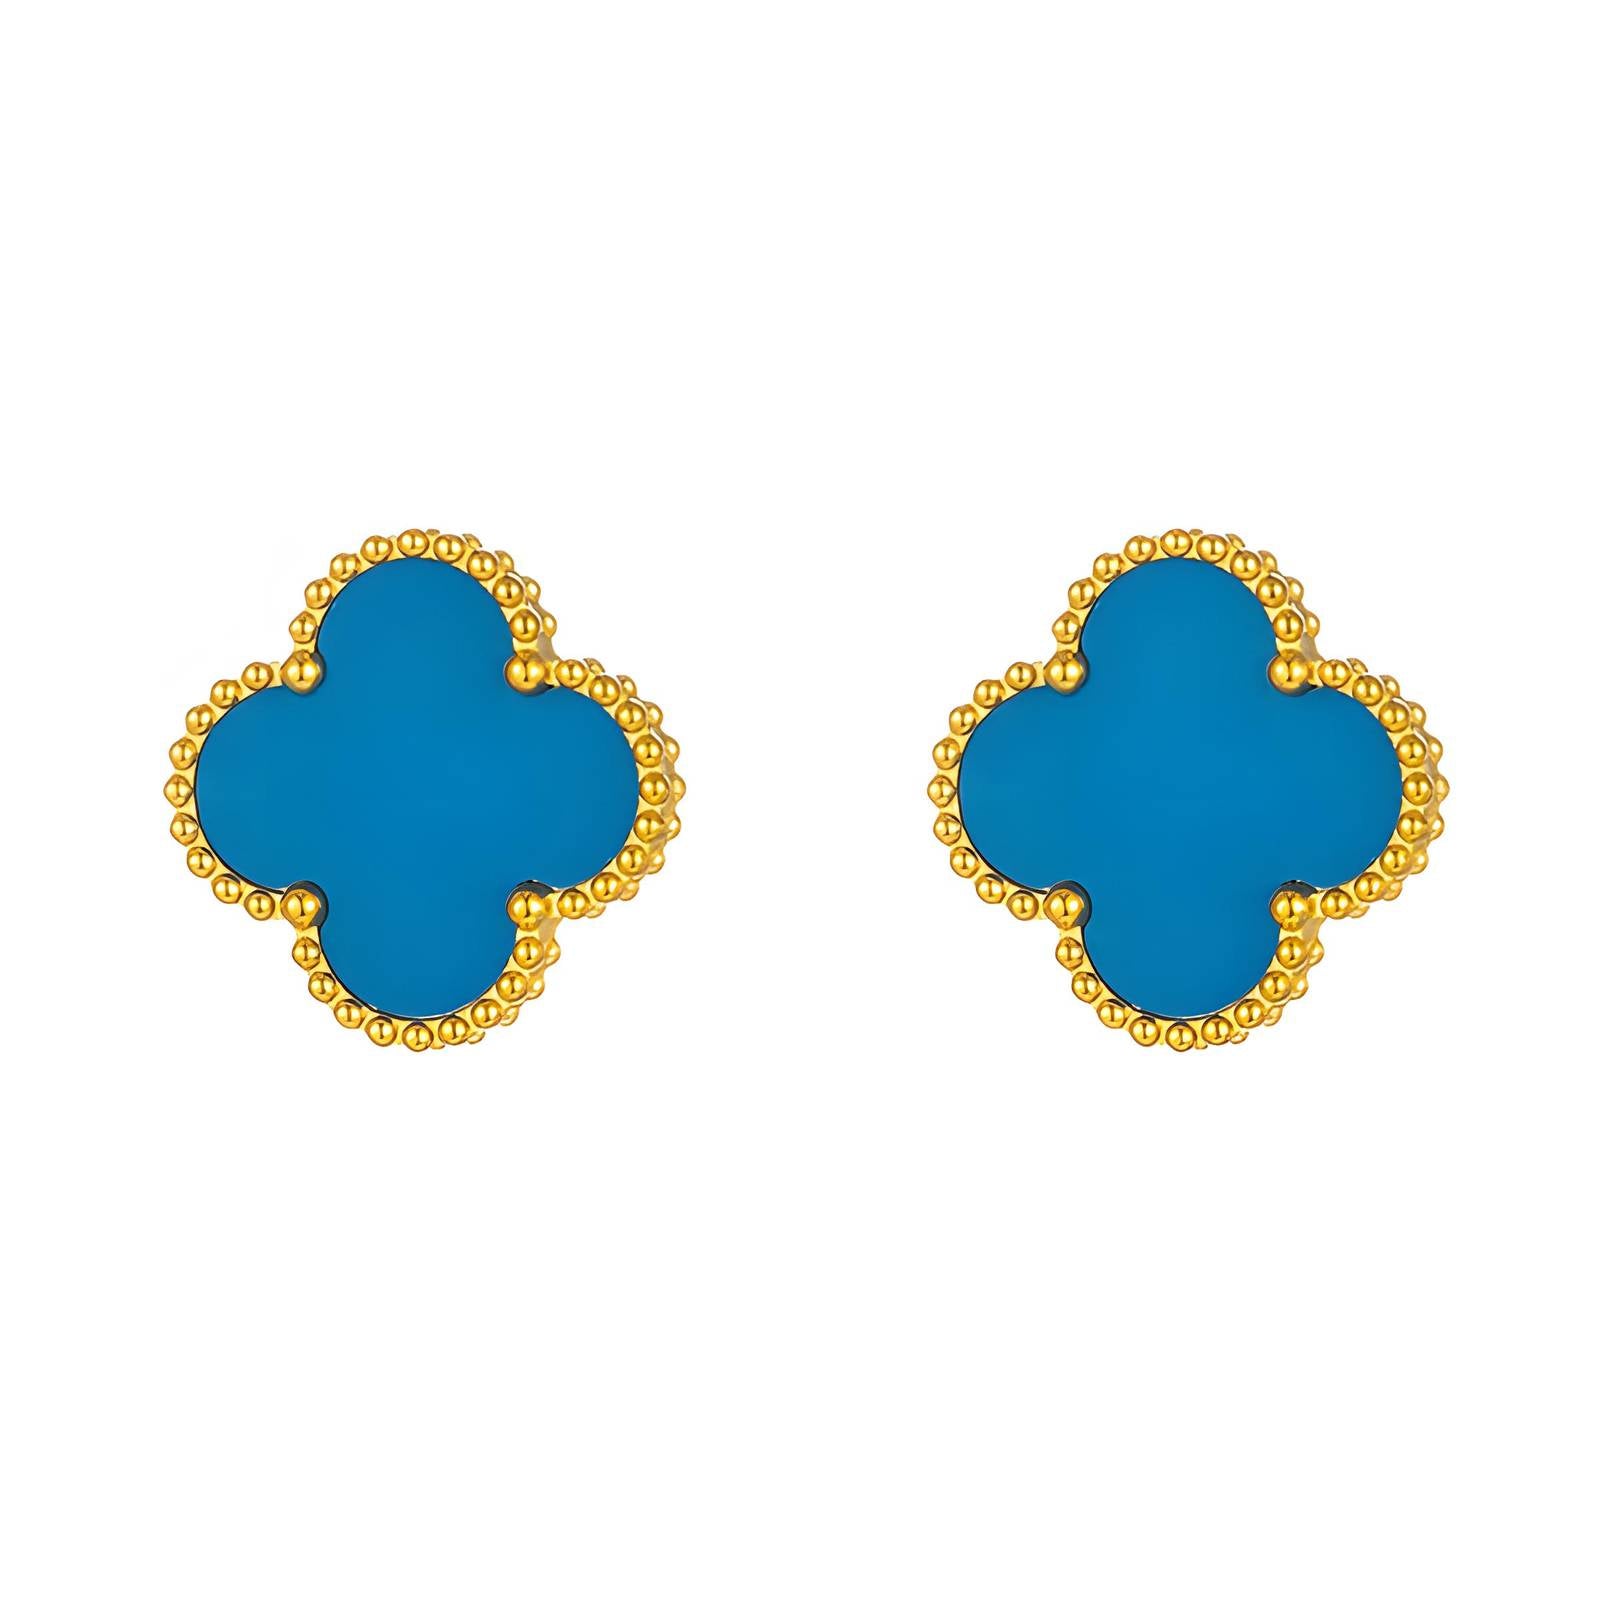 Four-leaf clover earrings - SAOROPHO